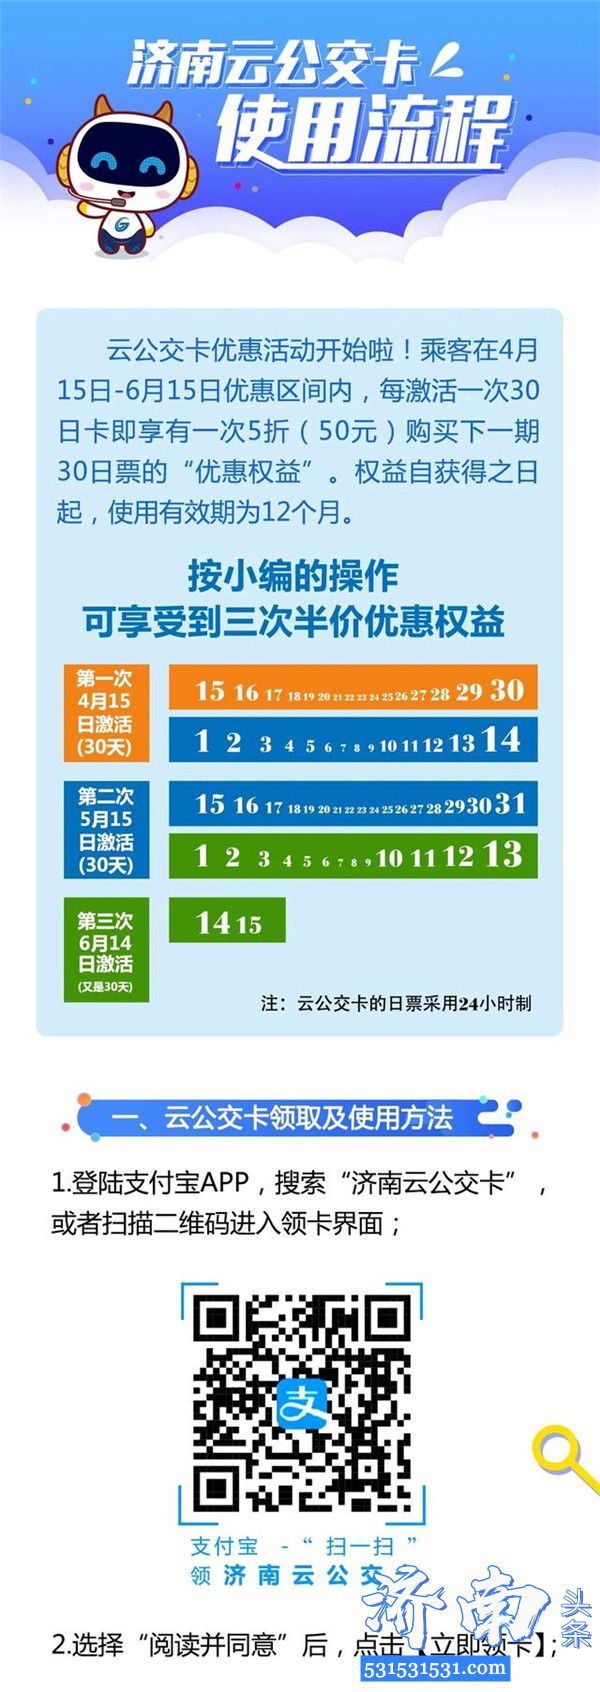 济南云公交卡推出优惠活动半价优惠可享三次 附使用流程